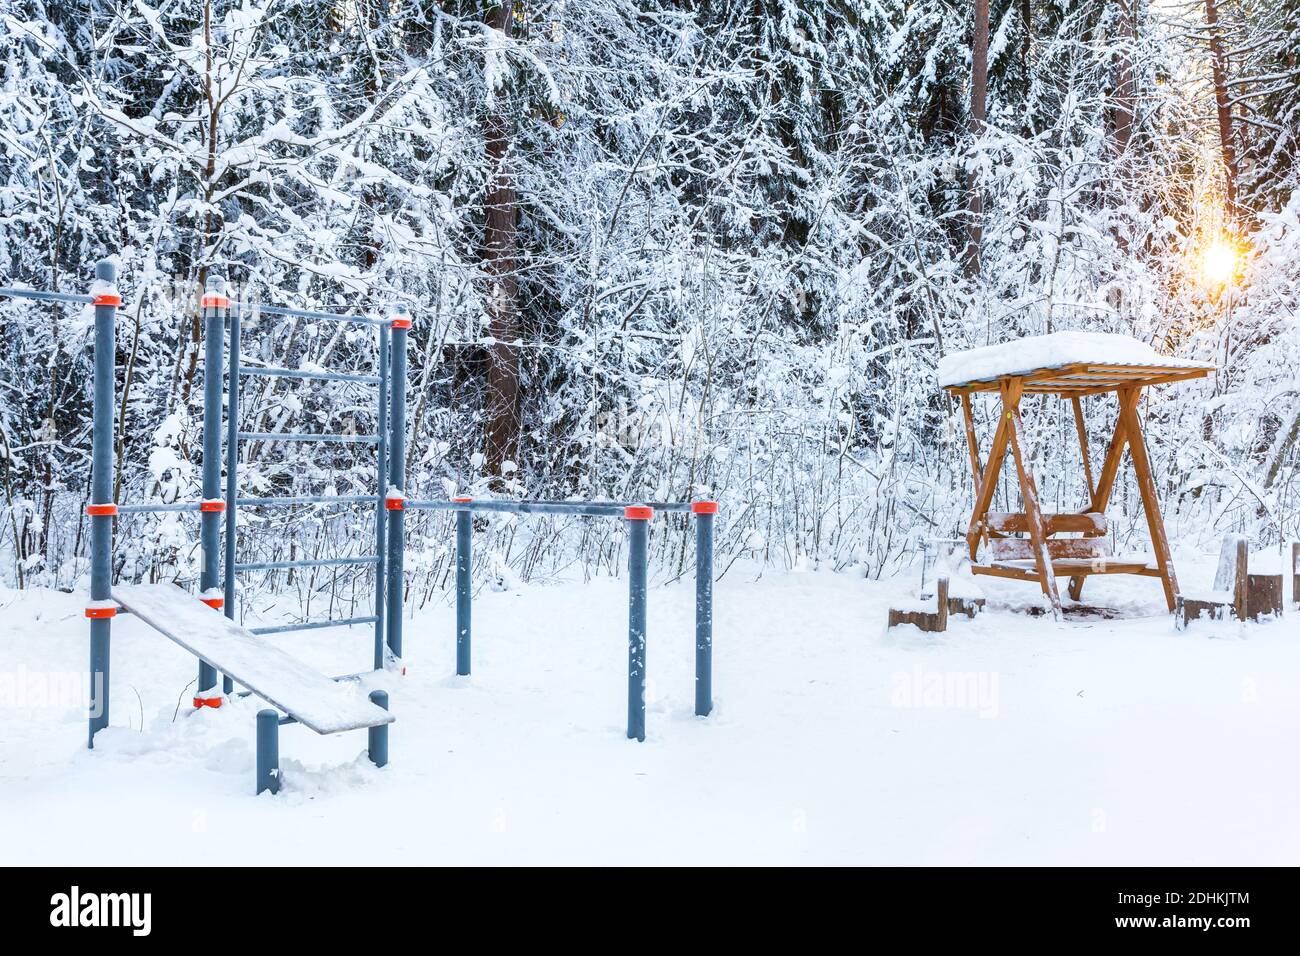 Un campo deportivo vacío en un parque de invierno o bosque con el telón de fondo de árboles cubiertos de nieve. Estilo de vida saludable. Foto de stock